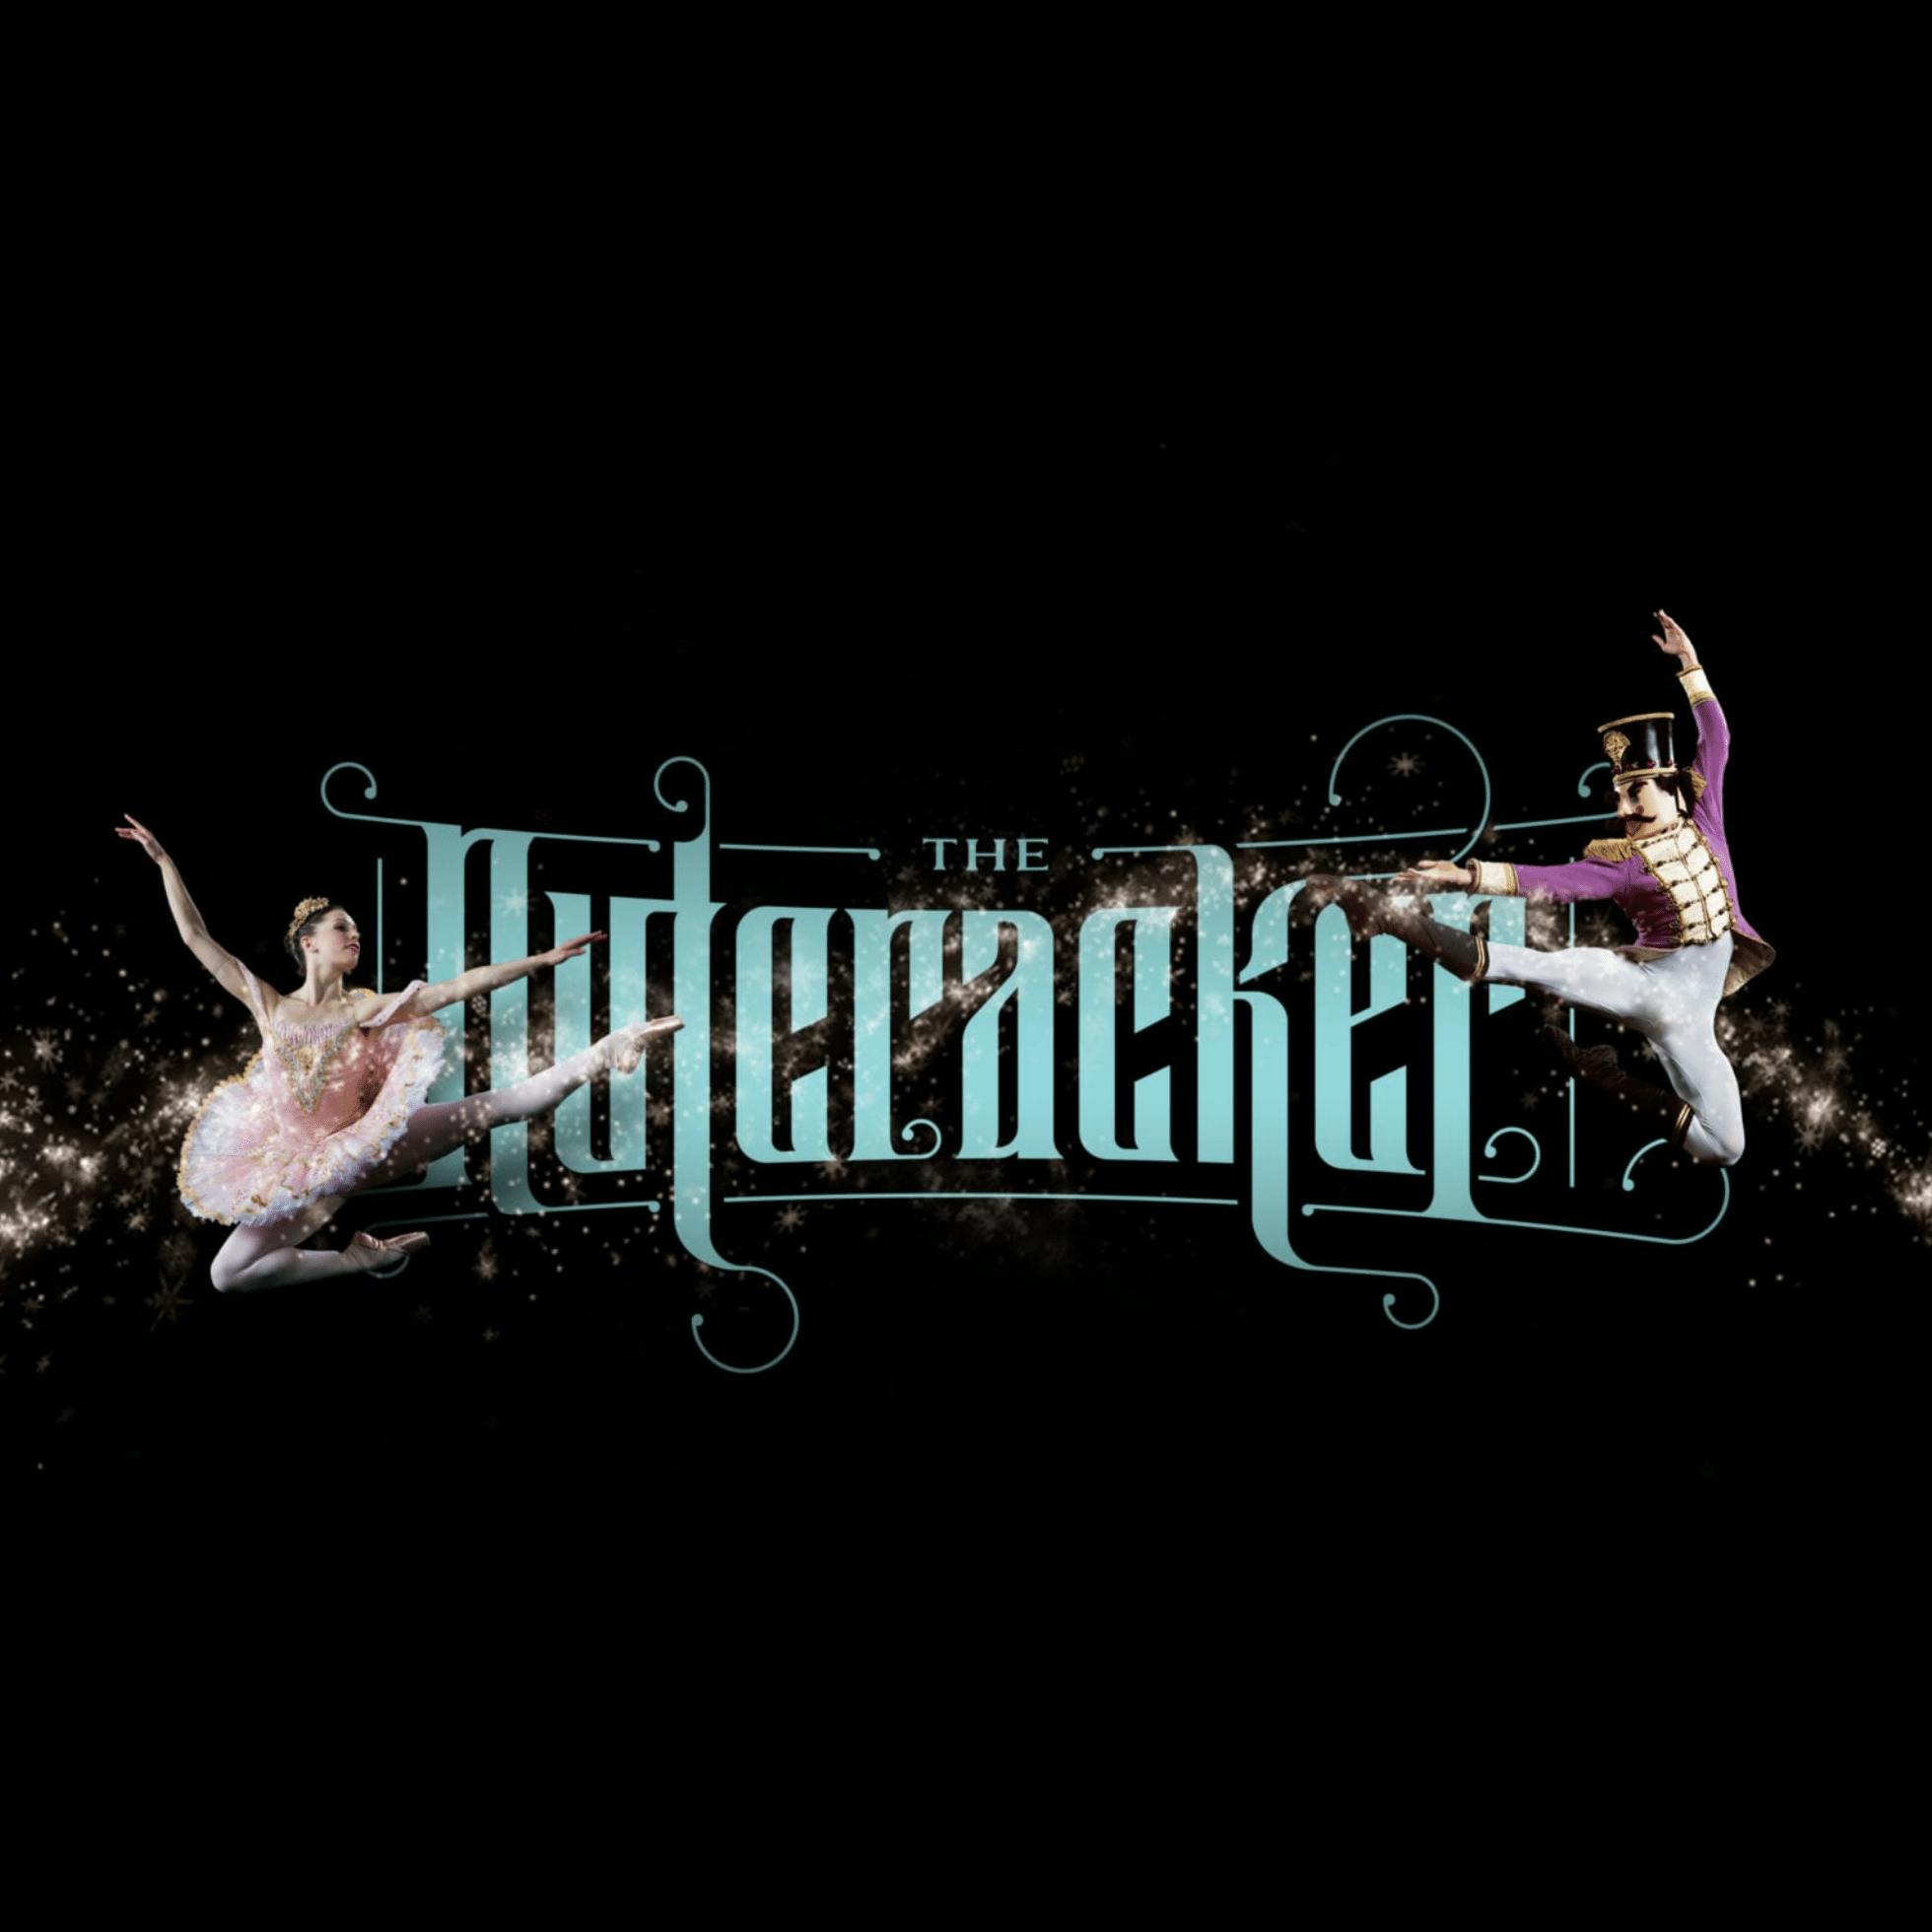 Richmond Ballet’s The Nutcracker